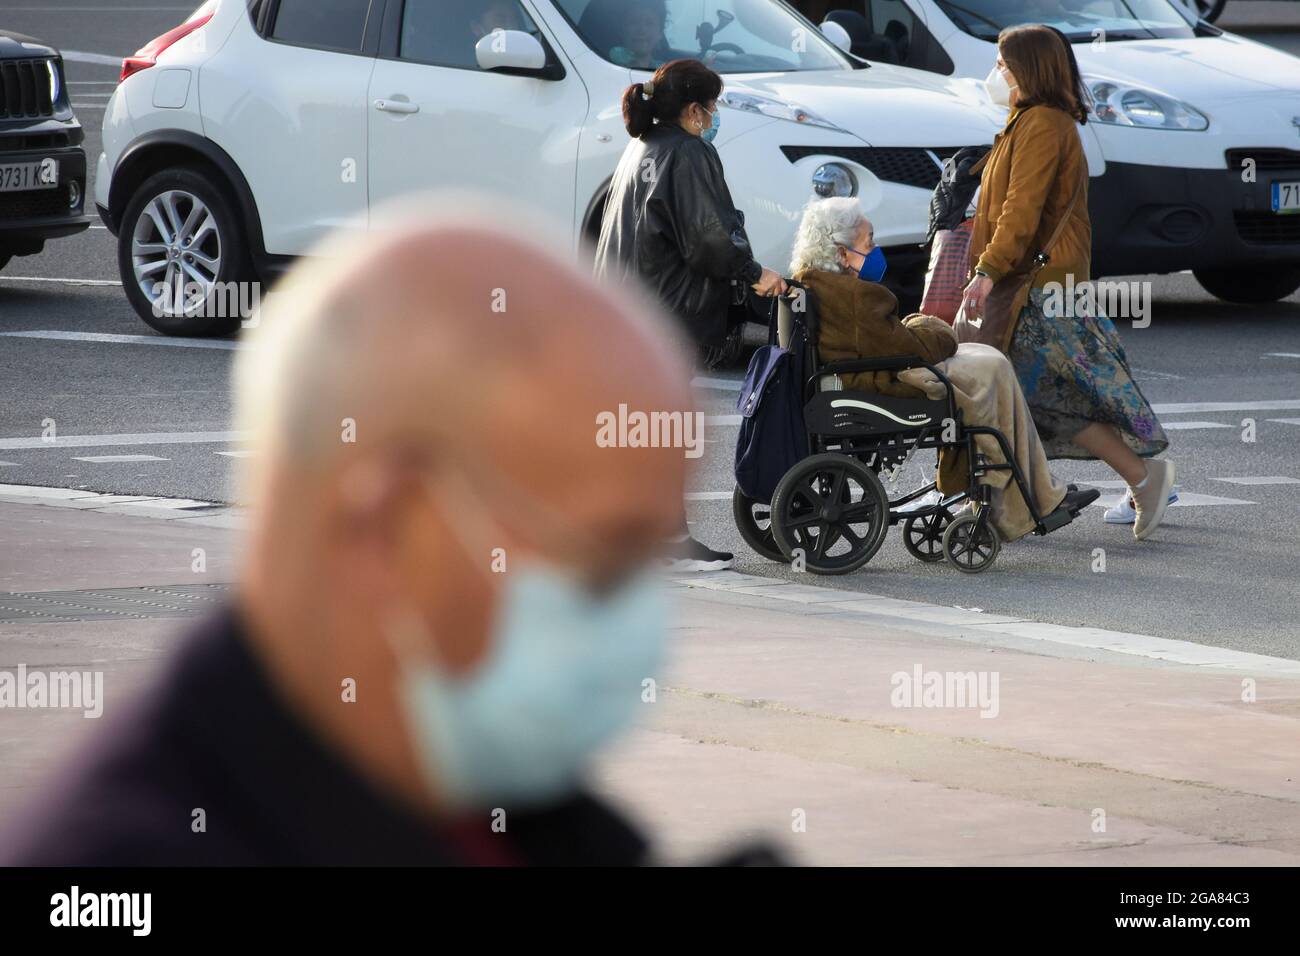 Persone che camminano in una strada con maschera durante i periodi di pandemia. L'operatore sanitario spinge la sedia a rotelle con una donna anziana seduta in essa. Foto Stock